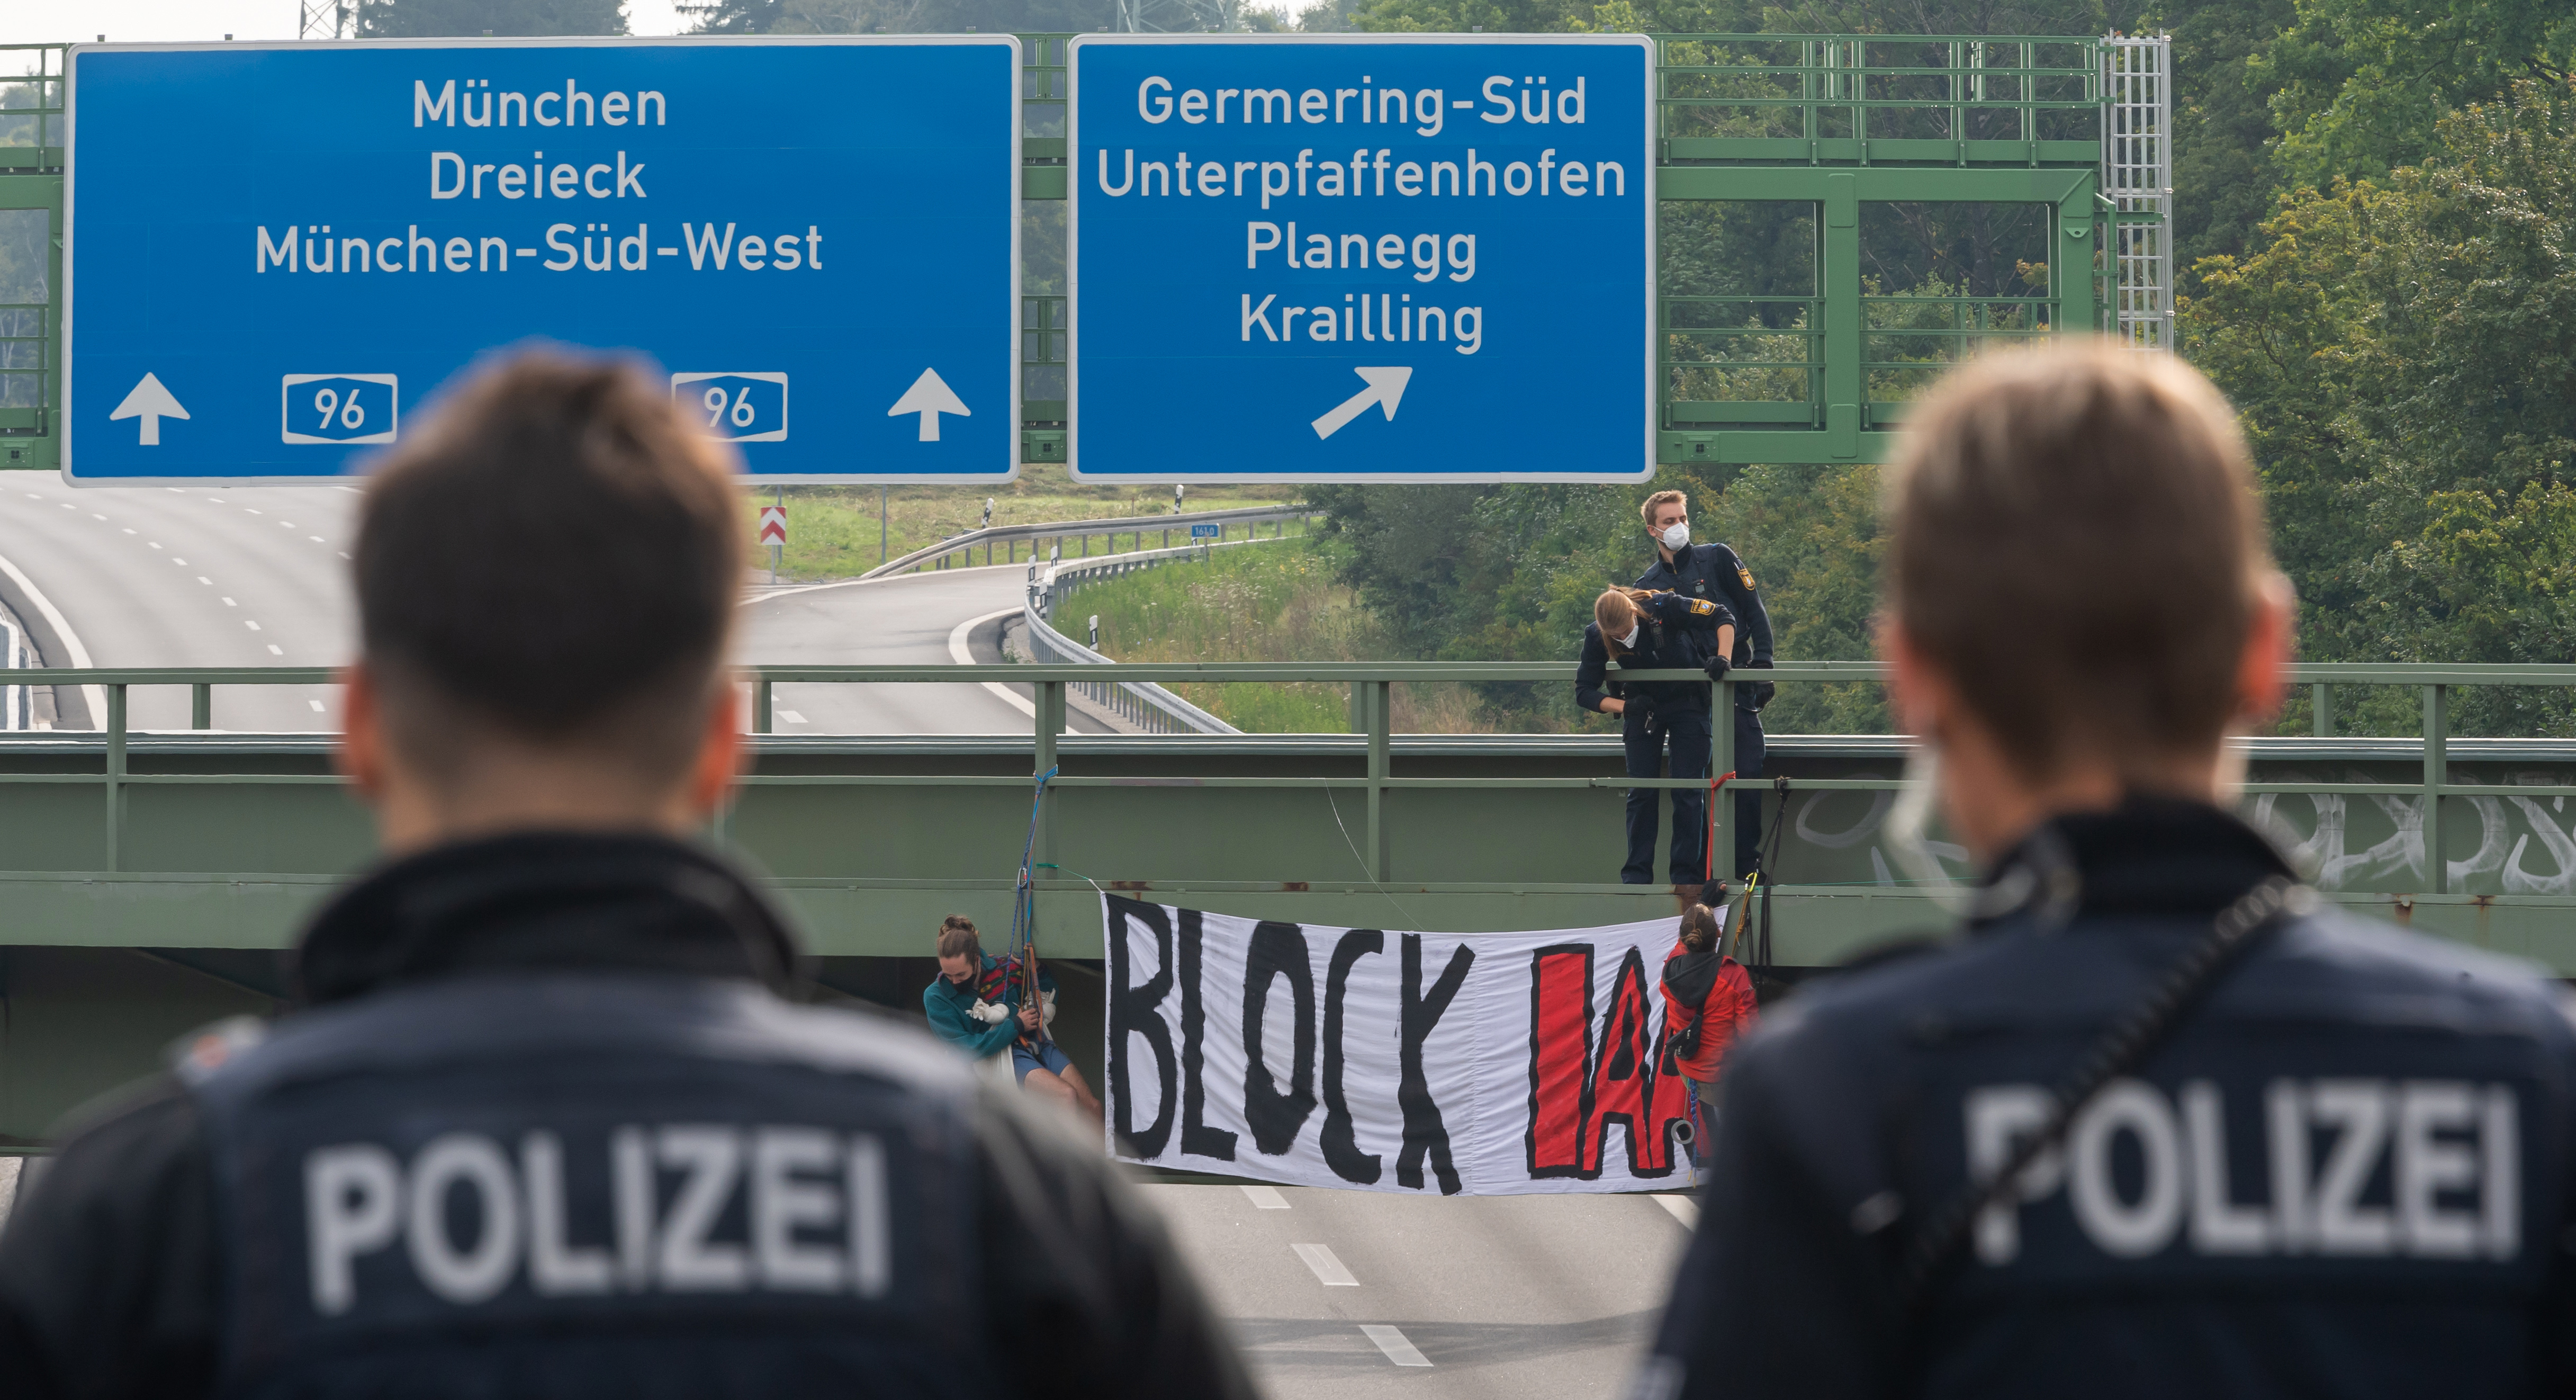 München: Polizei setzt Schlagstock am Gärtnerplatz wegen